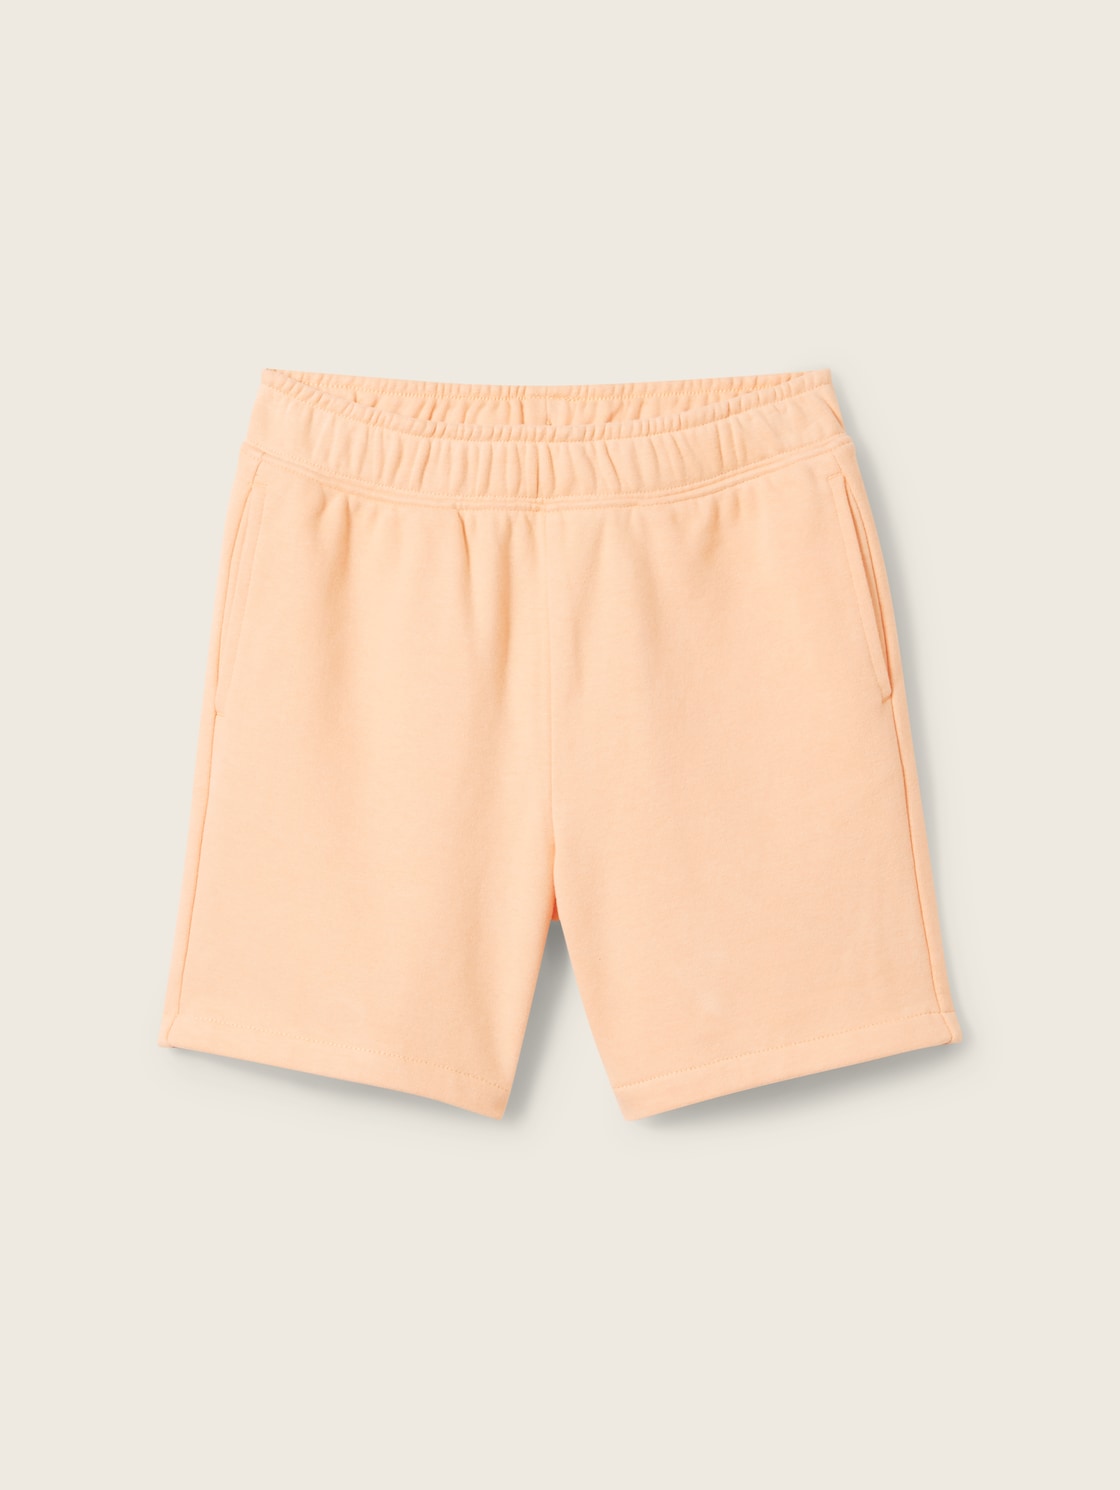 TOM TAILOR Jungen Basic Sweat Shorts, orange, Uni, Gr. 116/122 von Tom Tailor